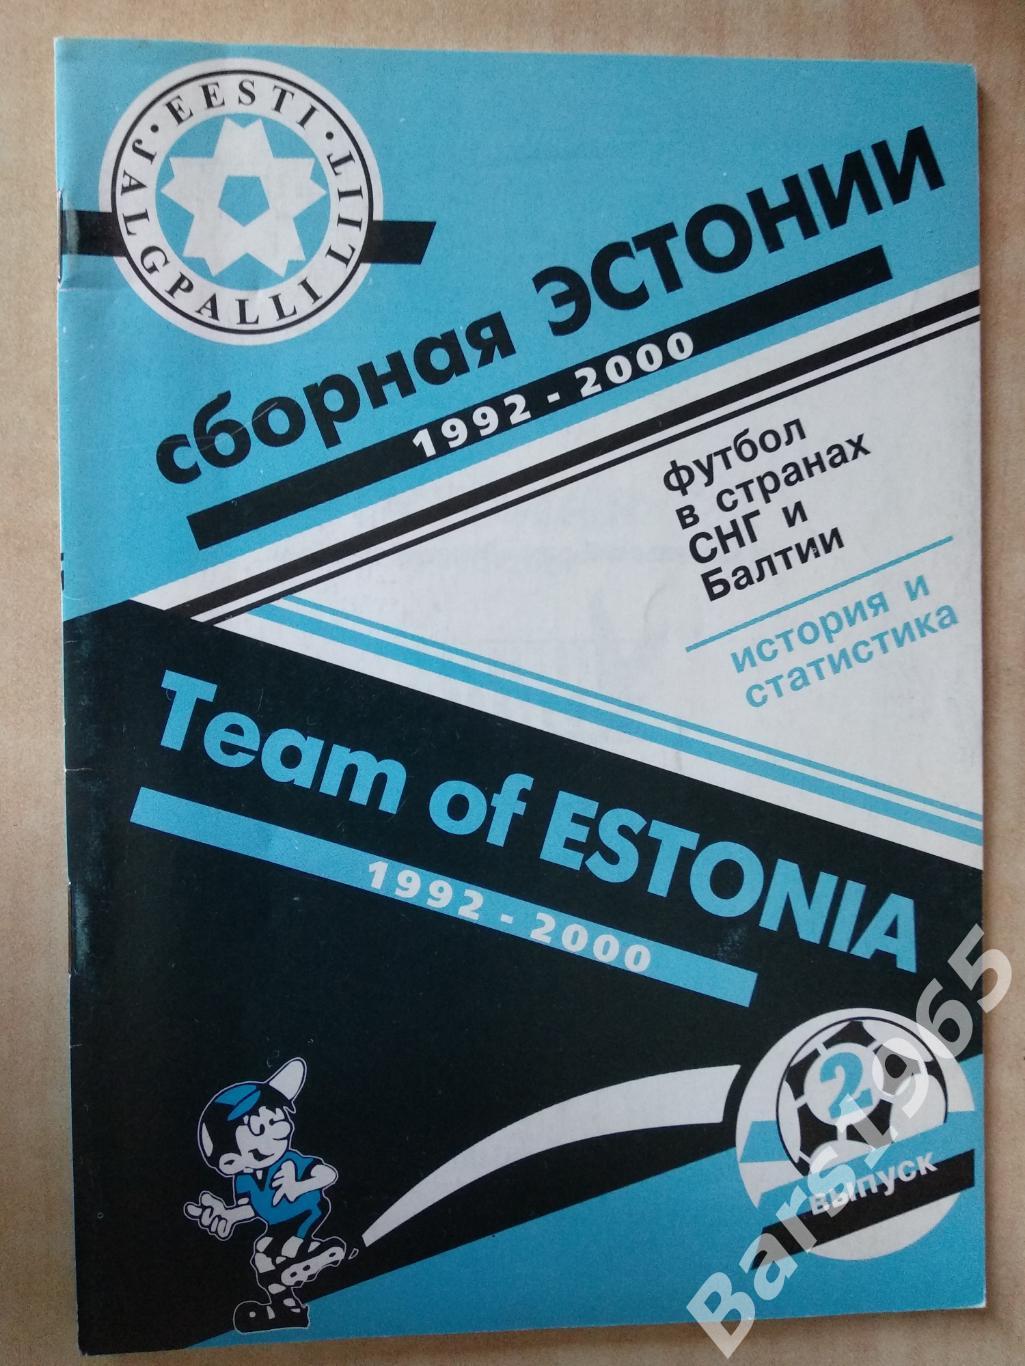 Сборная Эстонии по футболу 1992-2000